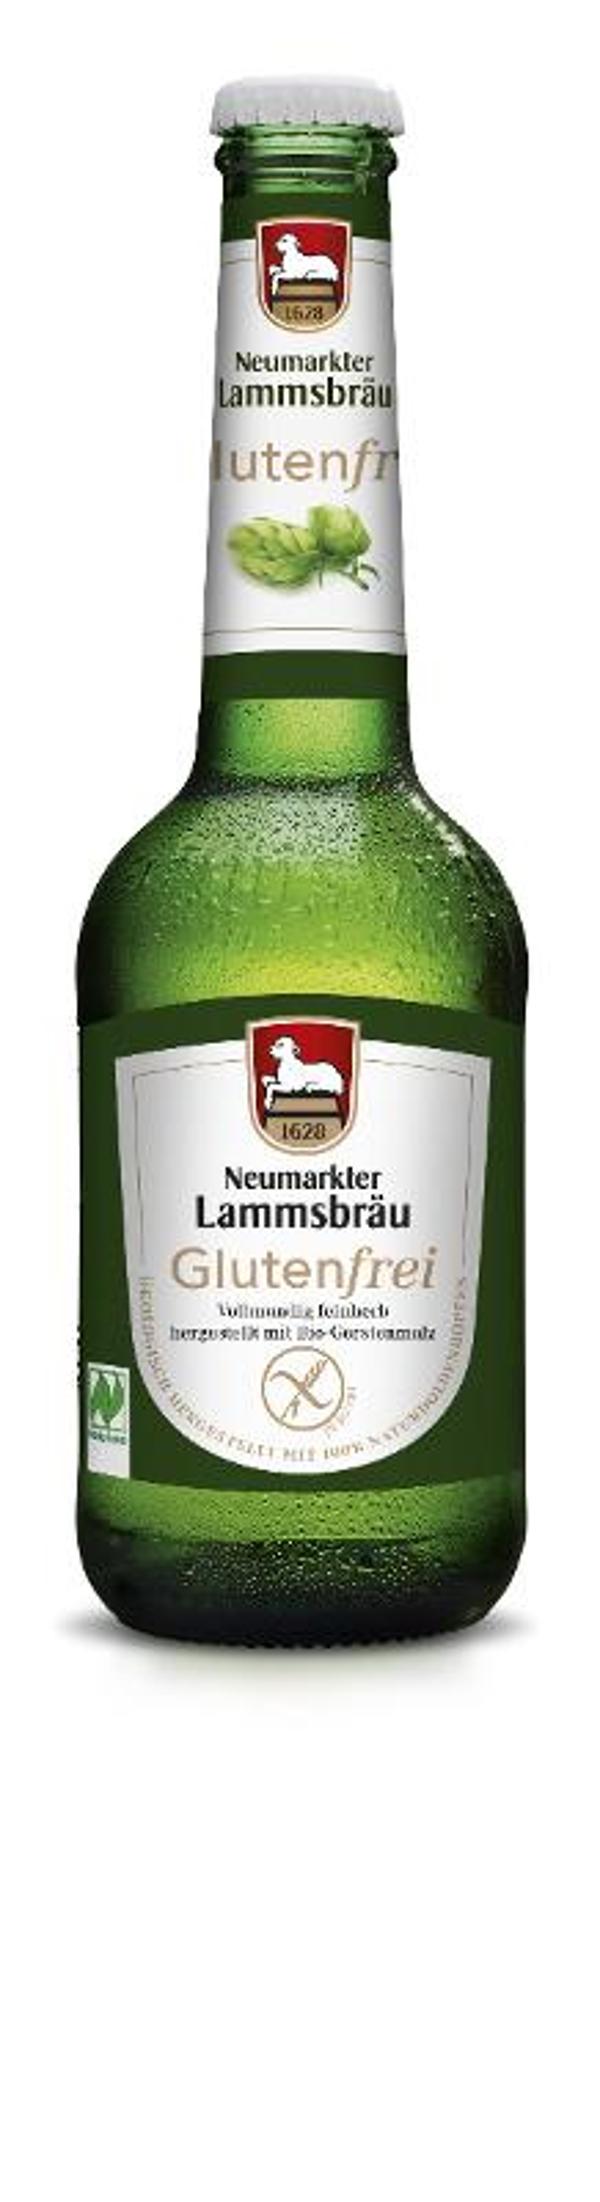 Produktfoto zu VPE Bier Lammsbräu Glutenfrei 10x0,33 l Neumarkter Lammsbräu